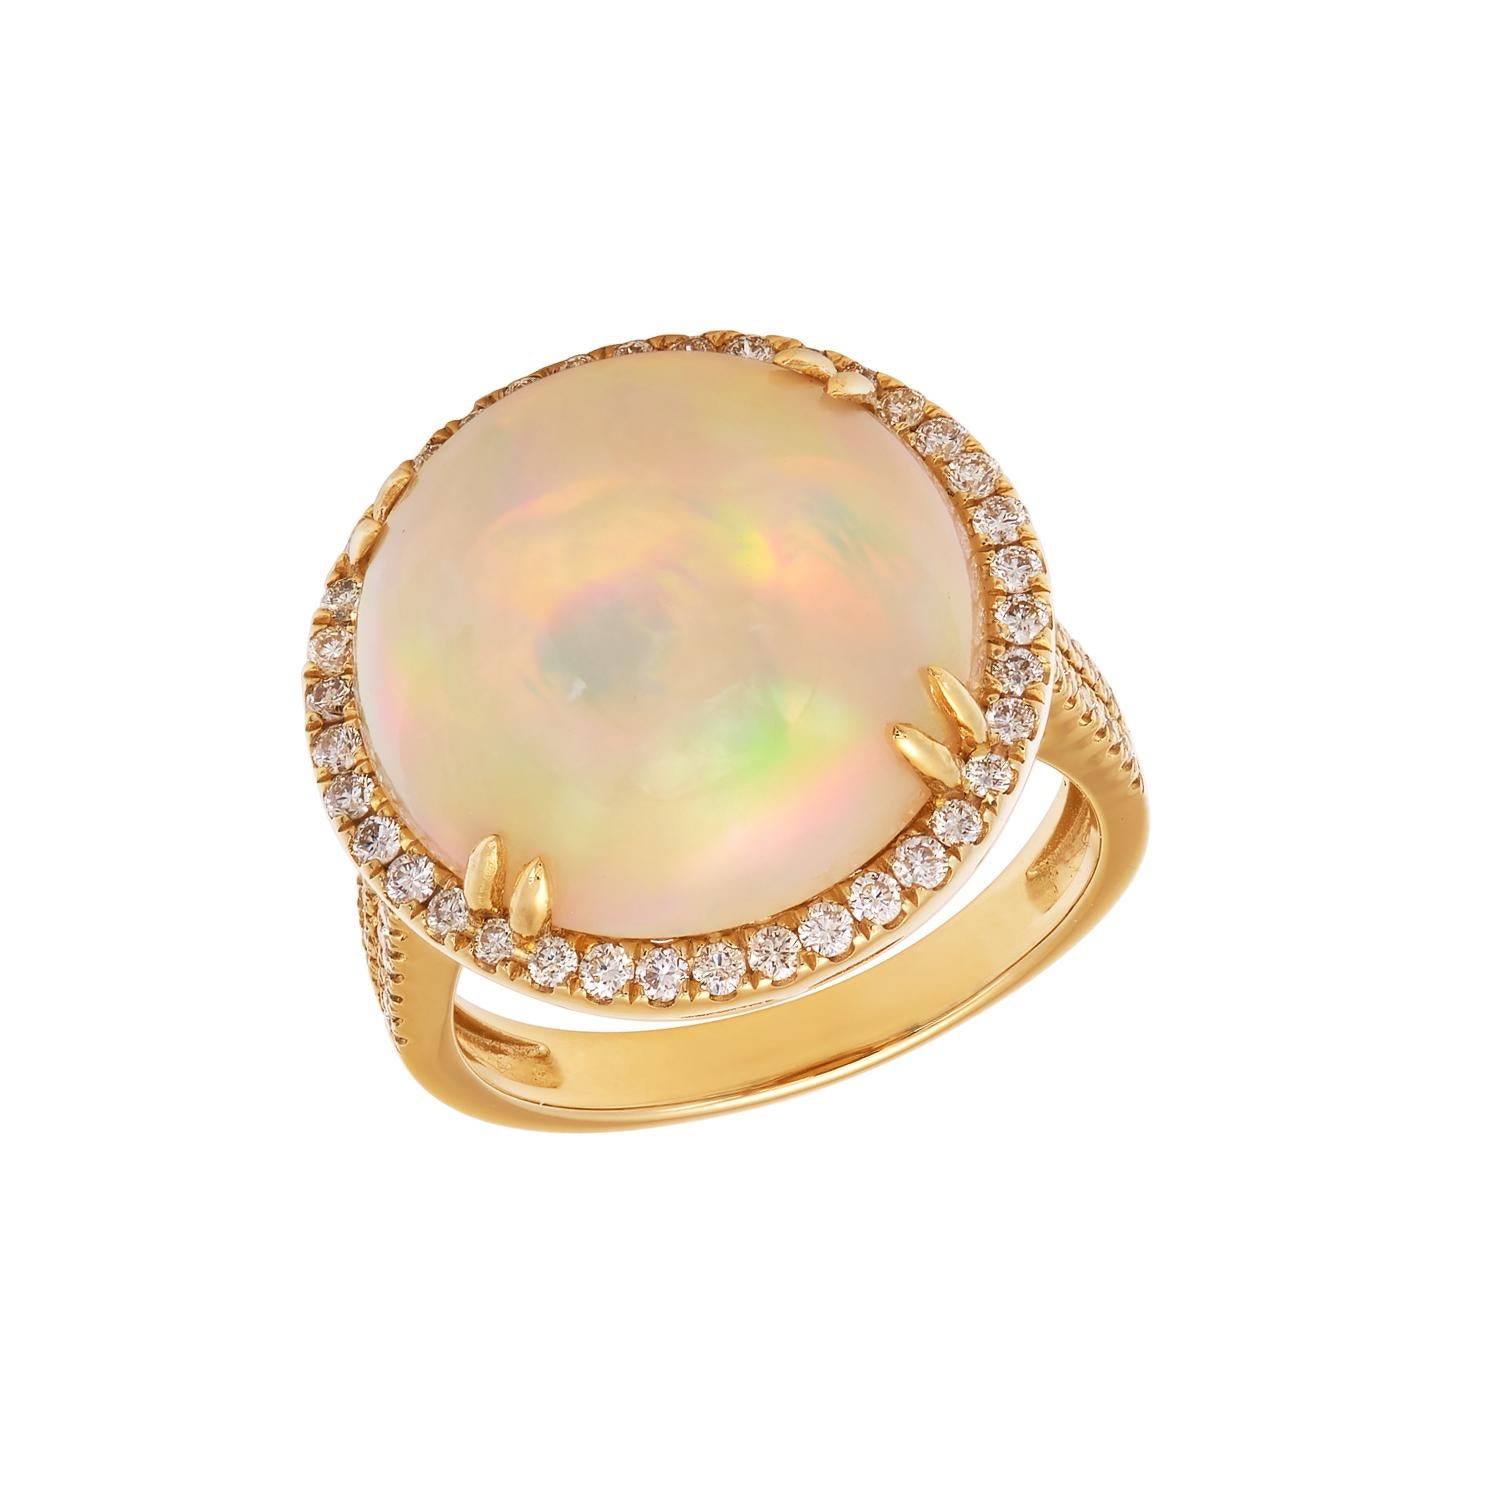 18K Gelbgold
Äthiopischer Opal: 7.25ct Gesamtgewicht. 
Diamanten: 0,54ct Gesamtgewicht.
Alle Diamanten sind G-H/SI-Steine.